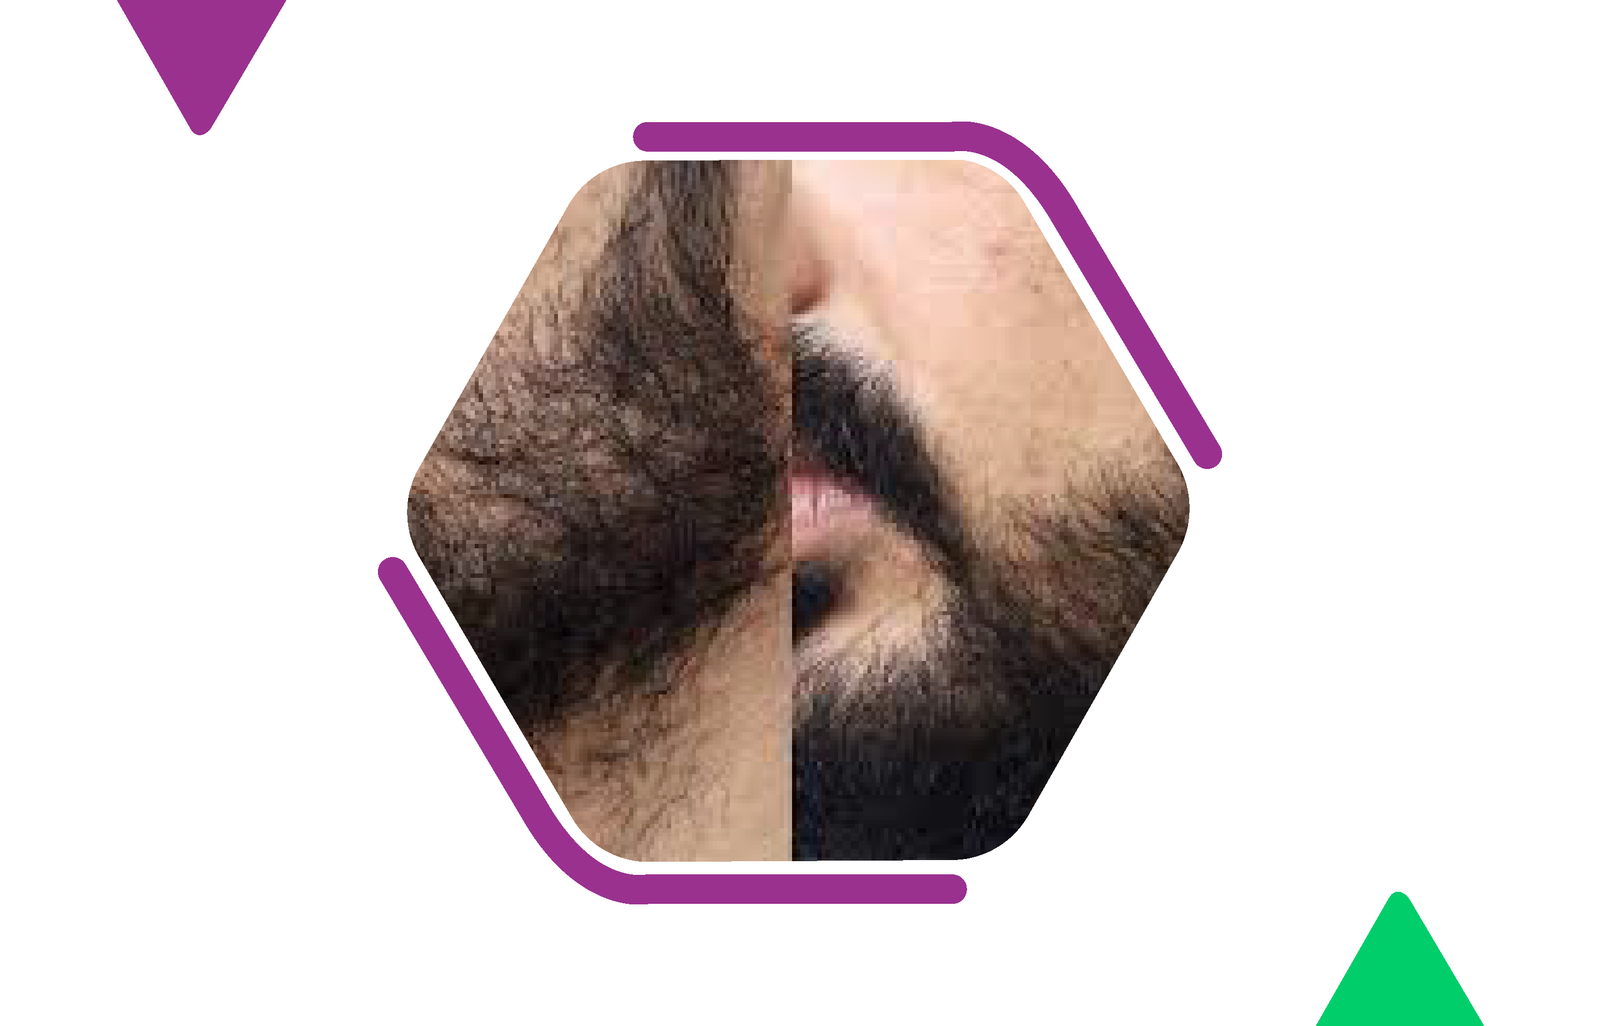 Moustache reconstruction